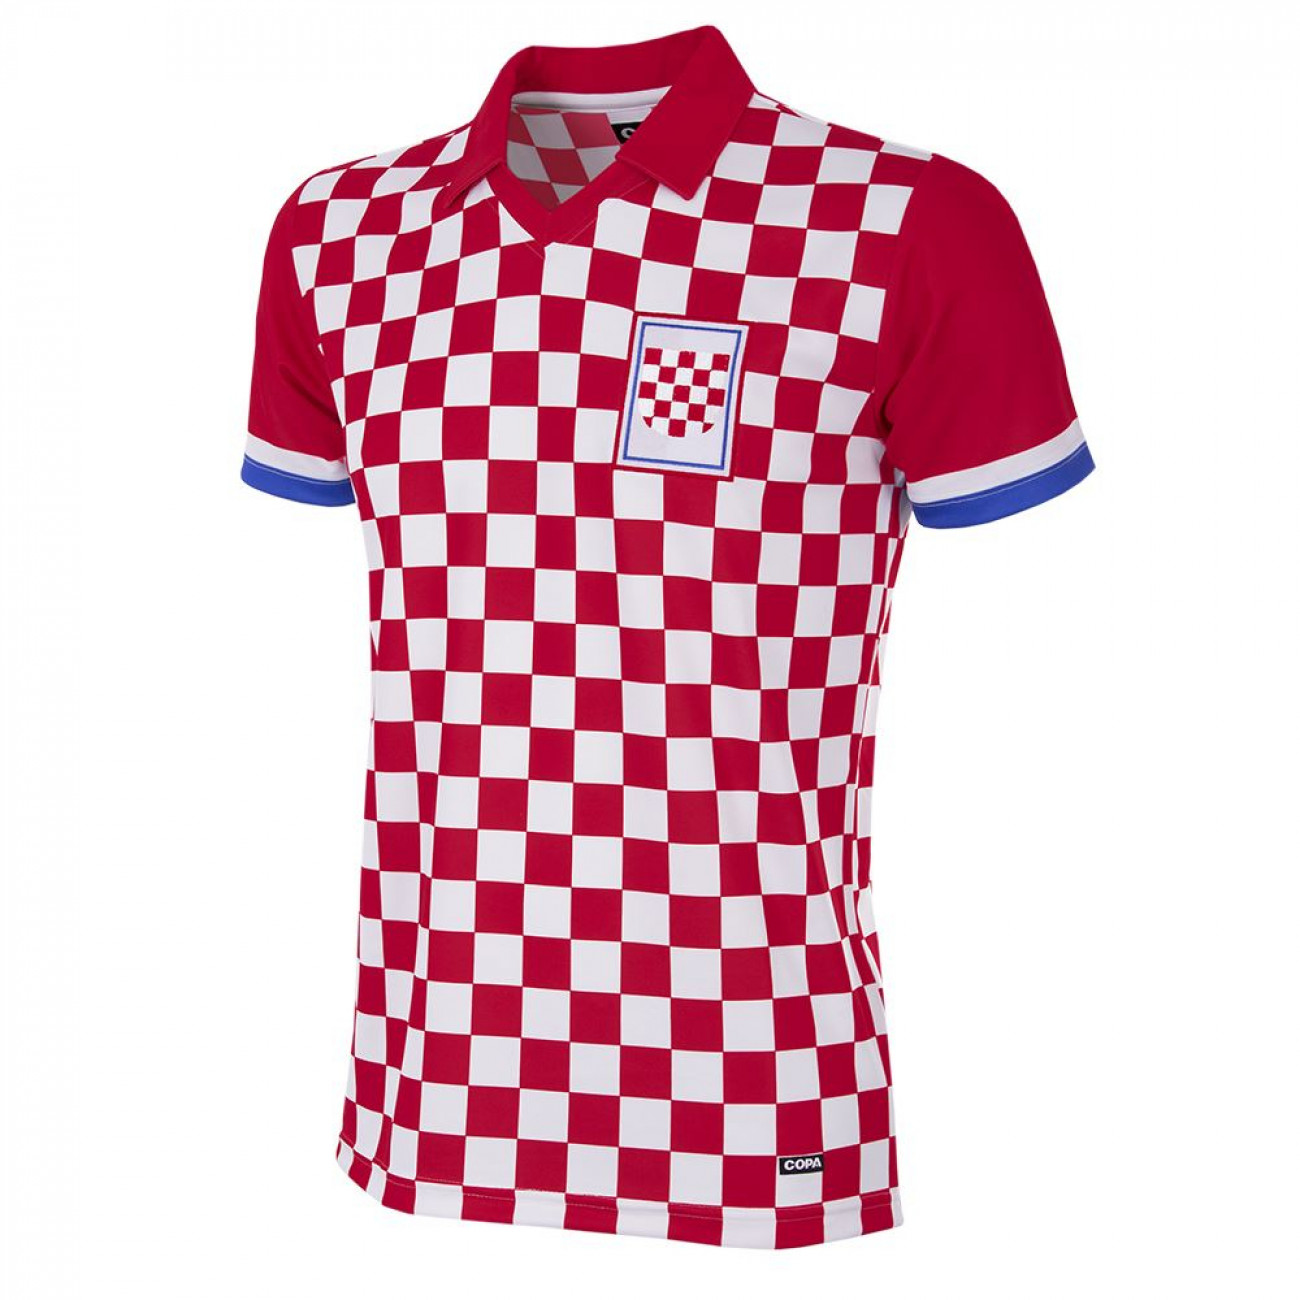 croatian jersey